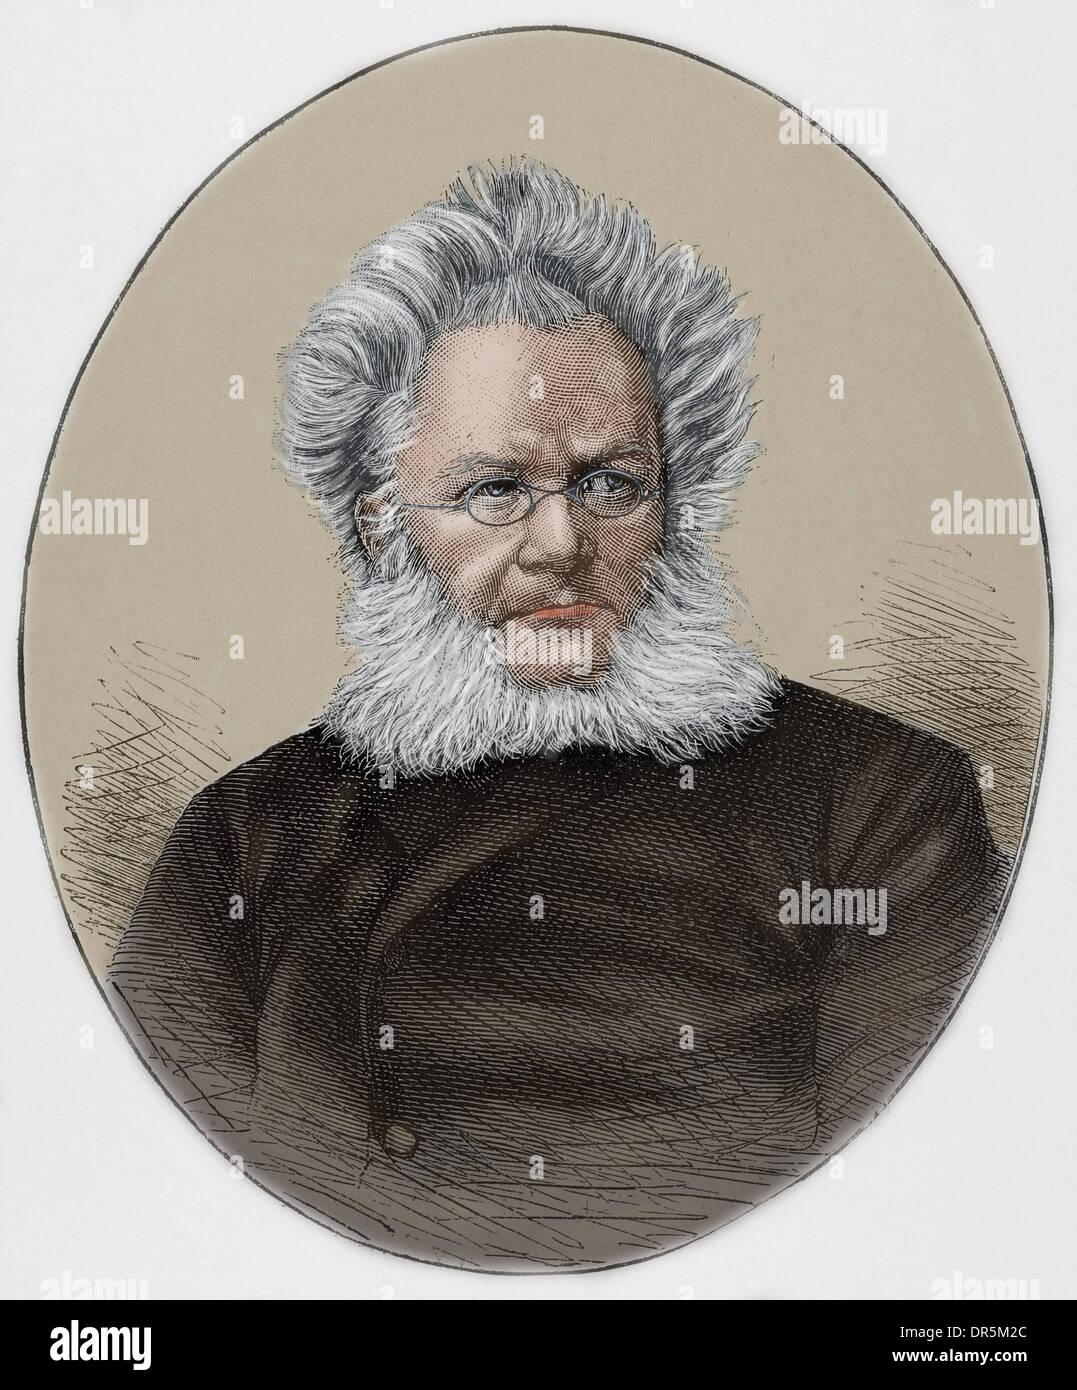 Henrik Ibsen (1828-1906). Norwegischer Dramatiker. Gravur in der katalanischen Abbildung, 1893. Farbige. Stockfoto